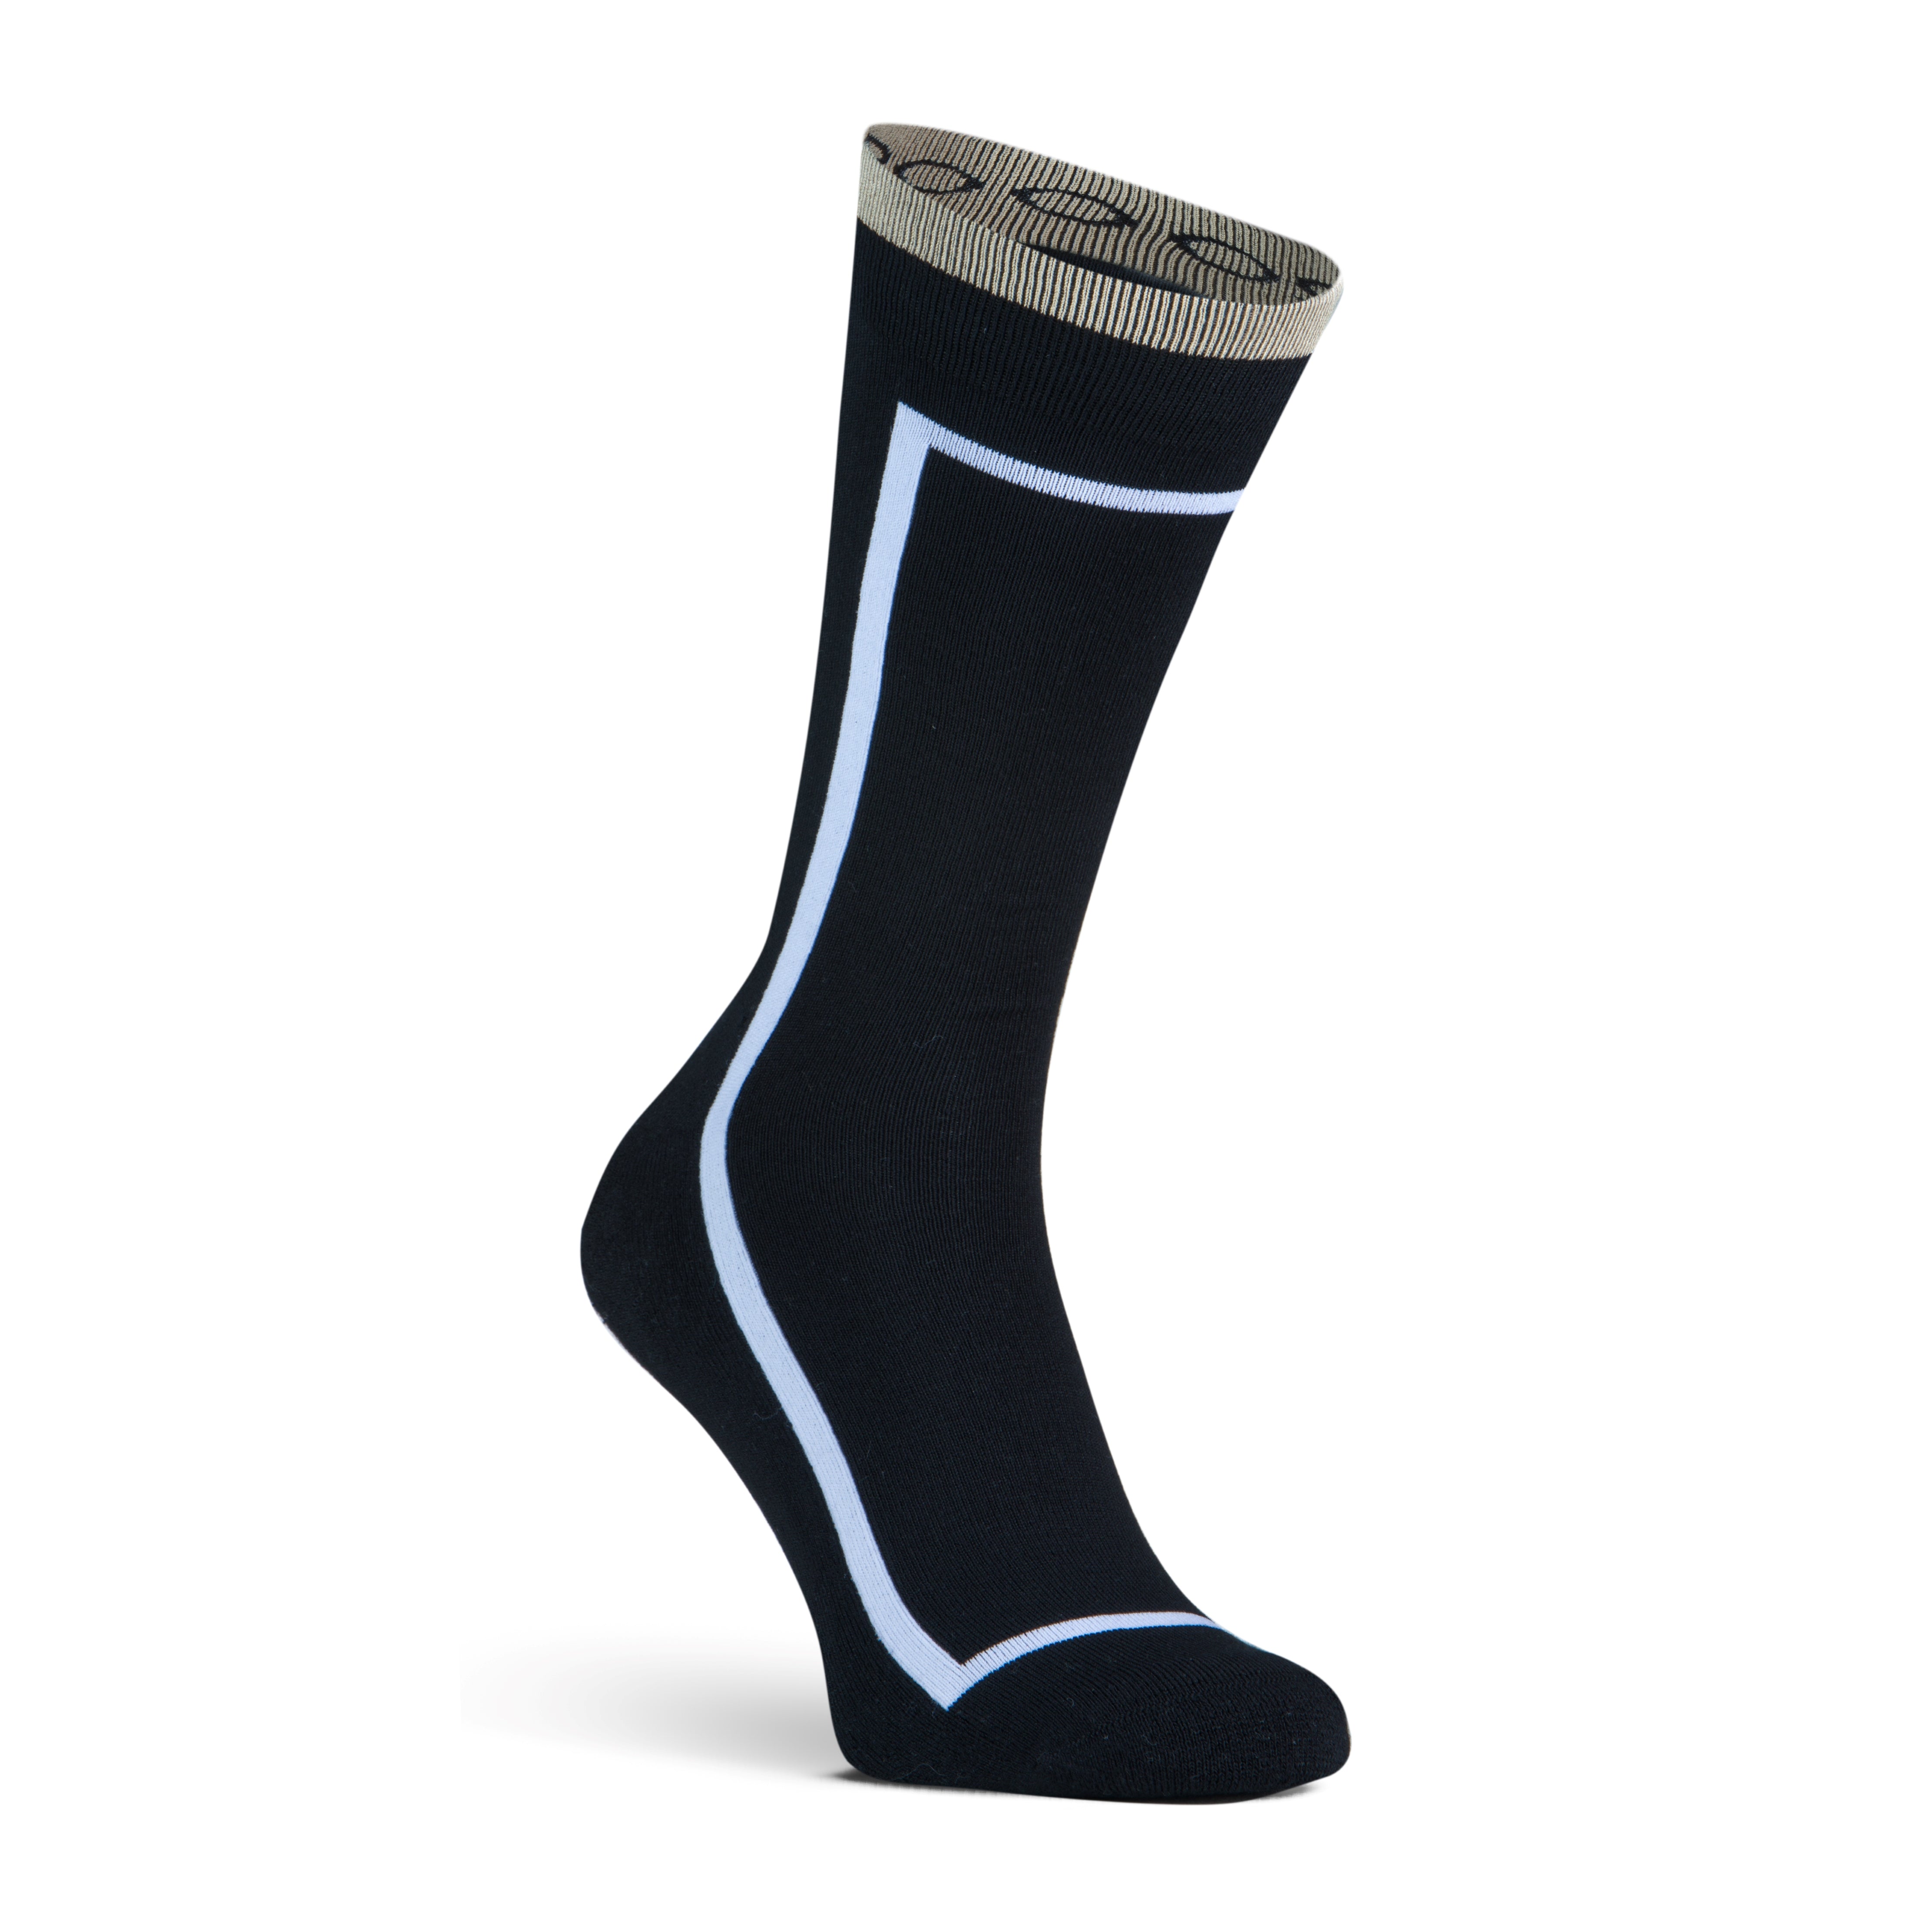 Rome men's socks Black